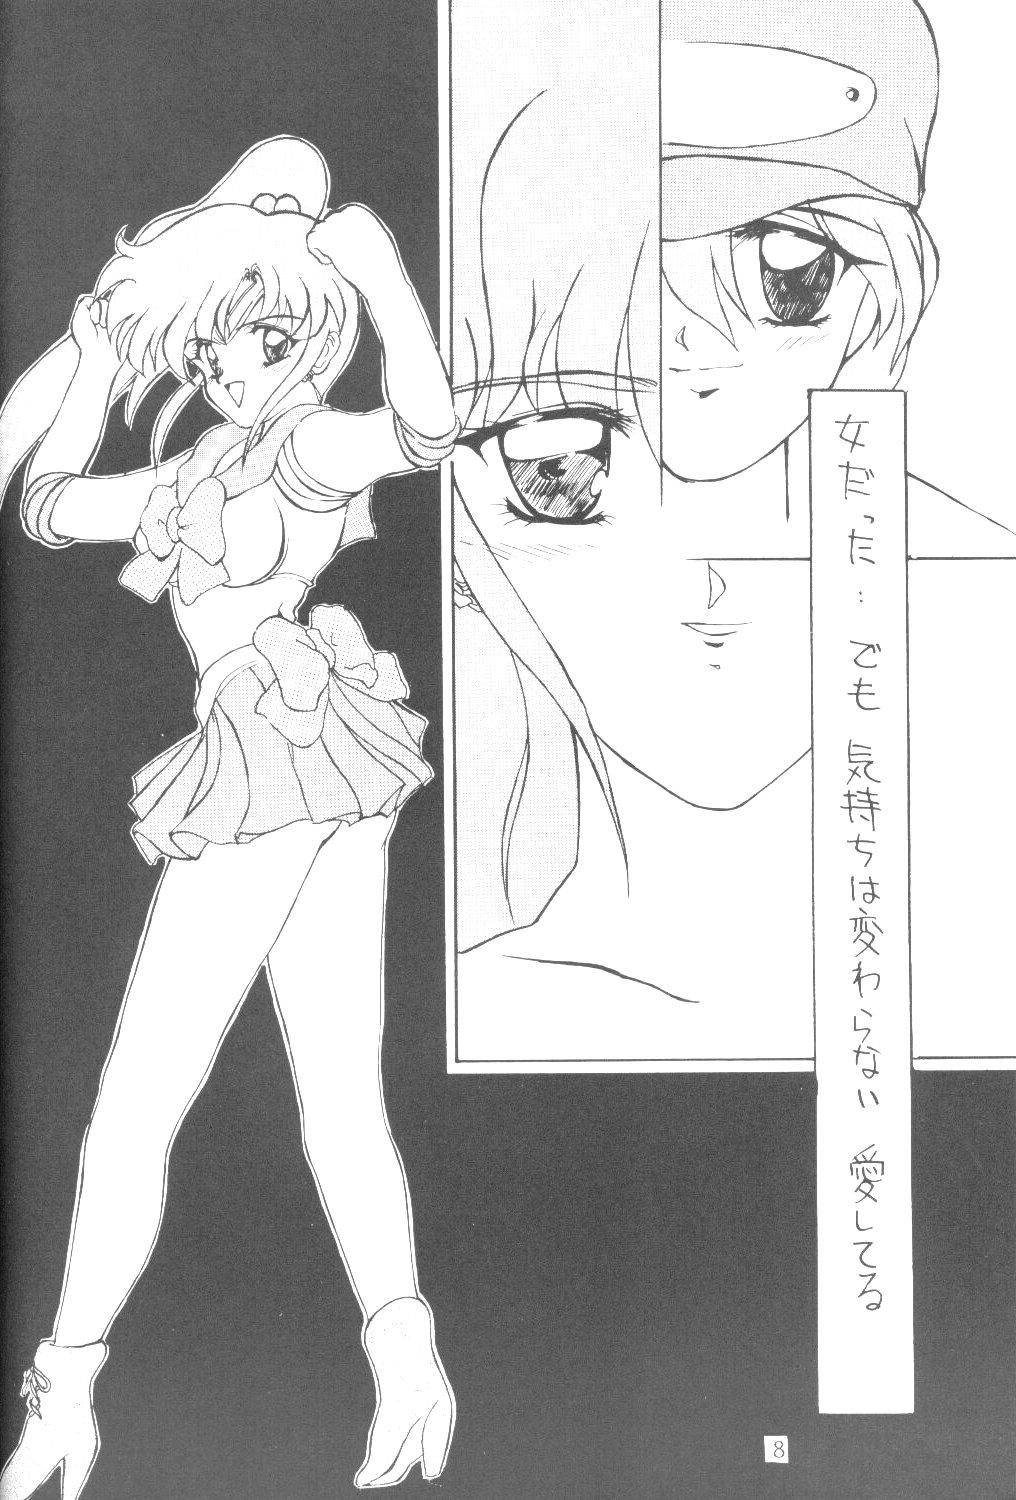 Nurumassage ALIVE AMI LOST - Sailor moon Ejaculation - Page 7